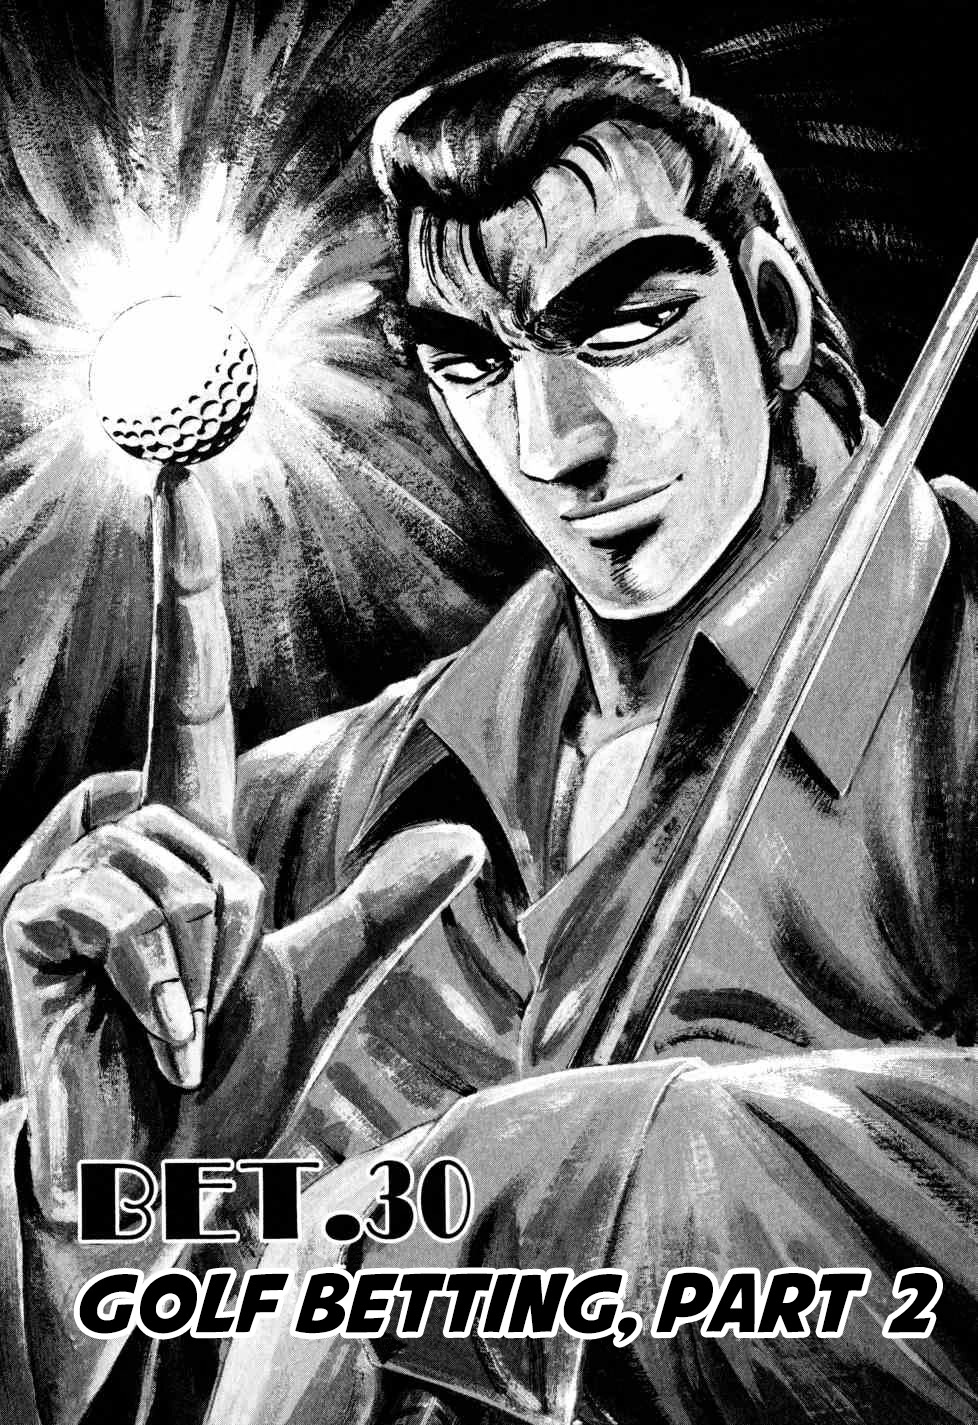 Seikimatsu Bakurouden Saga - Page 1